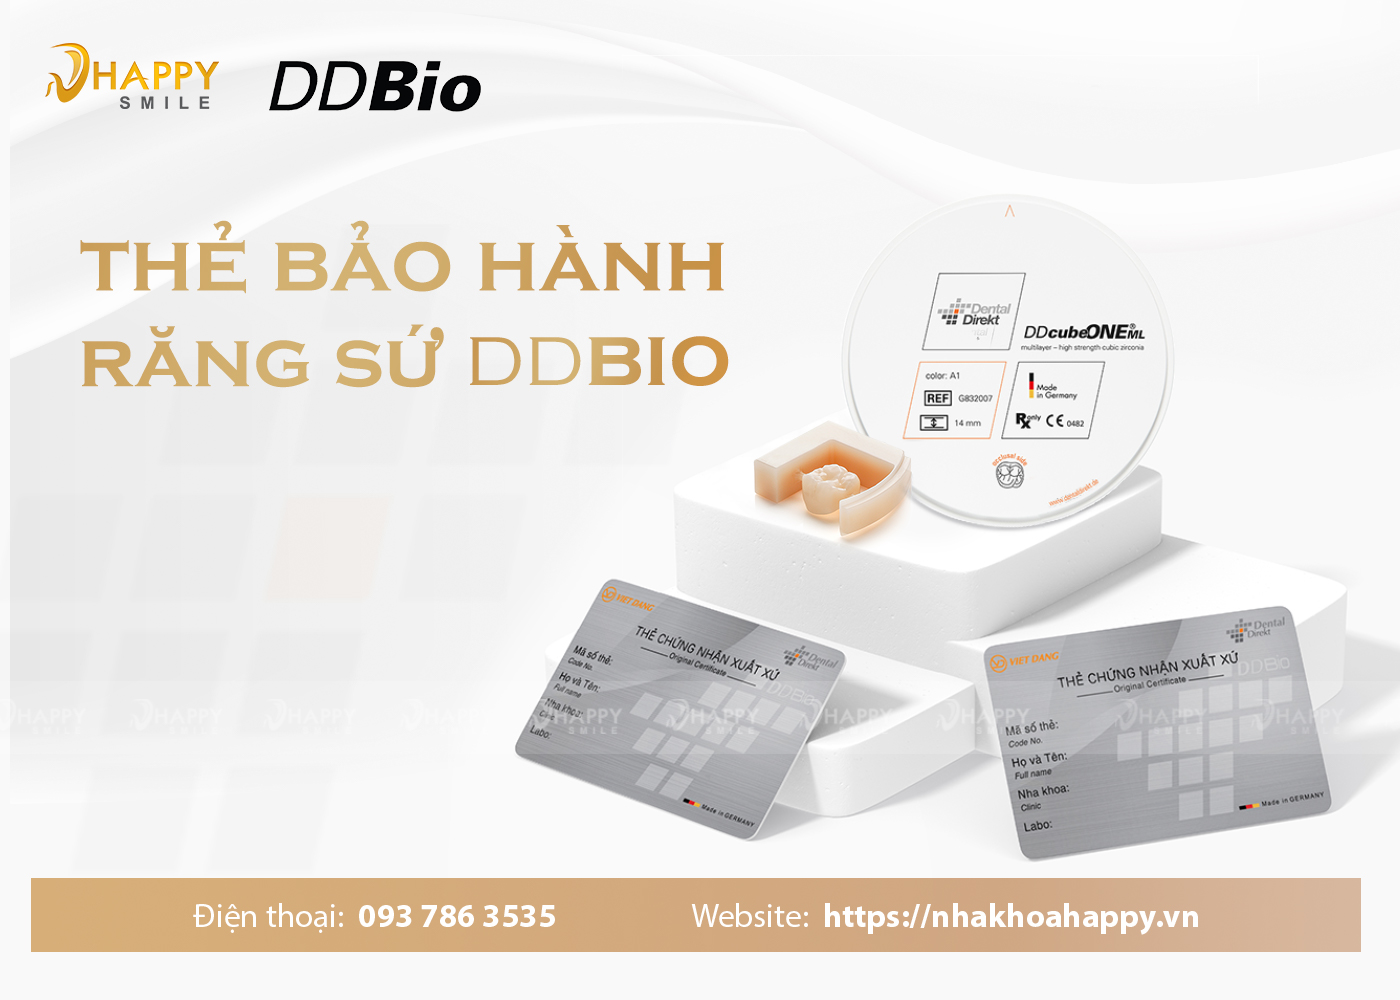 Thẻ bảo hành DDBIO chính hãng và những điều cần biết